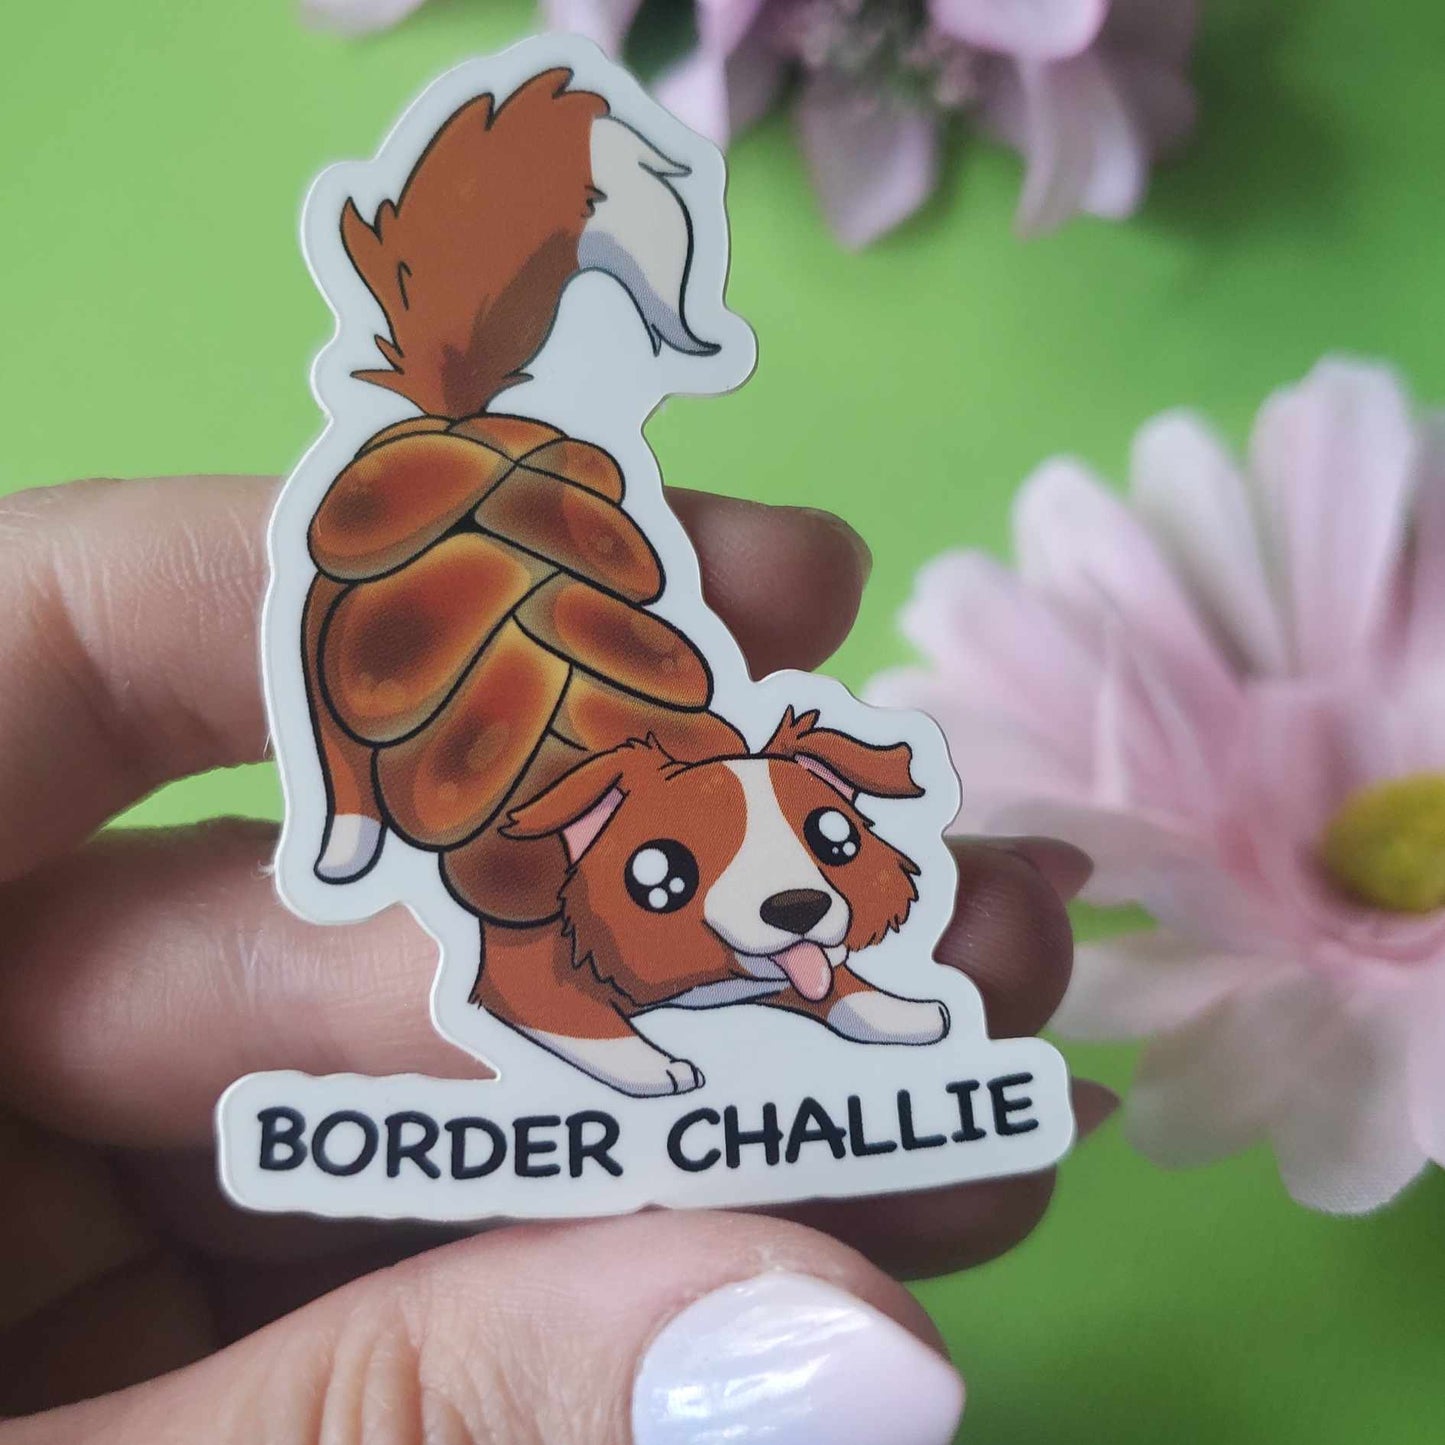 Border Challie Sticker (border collie + challah bread)